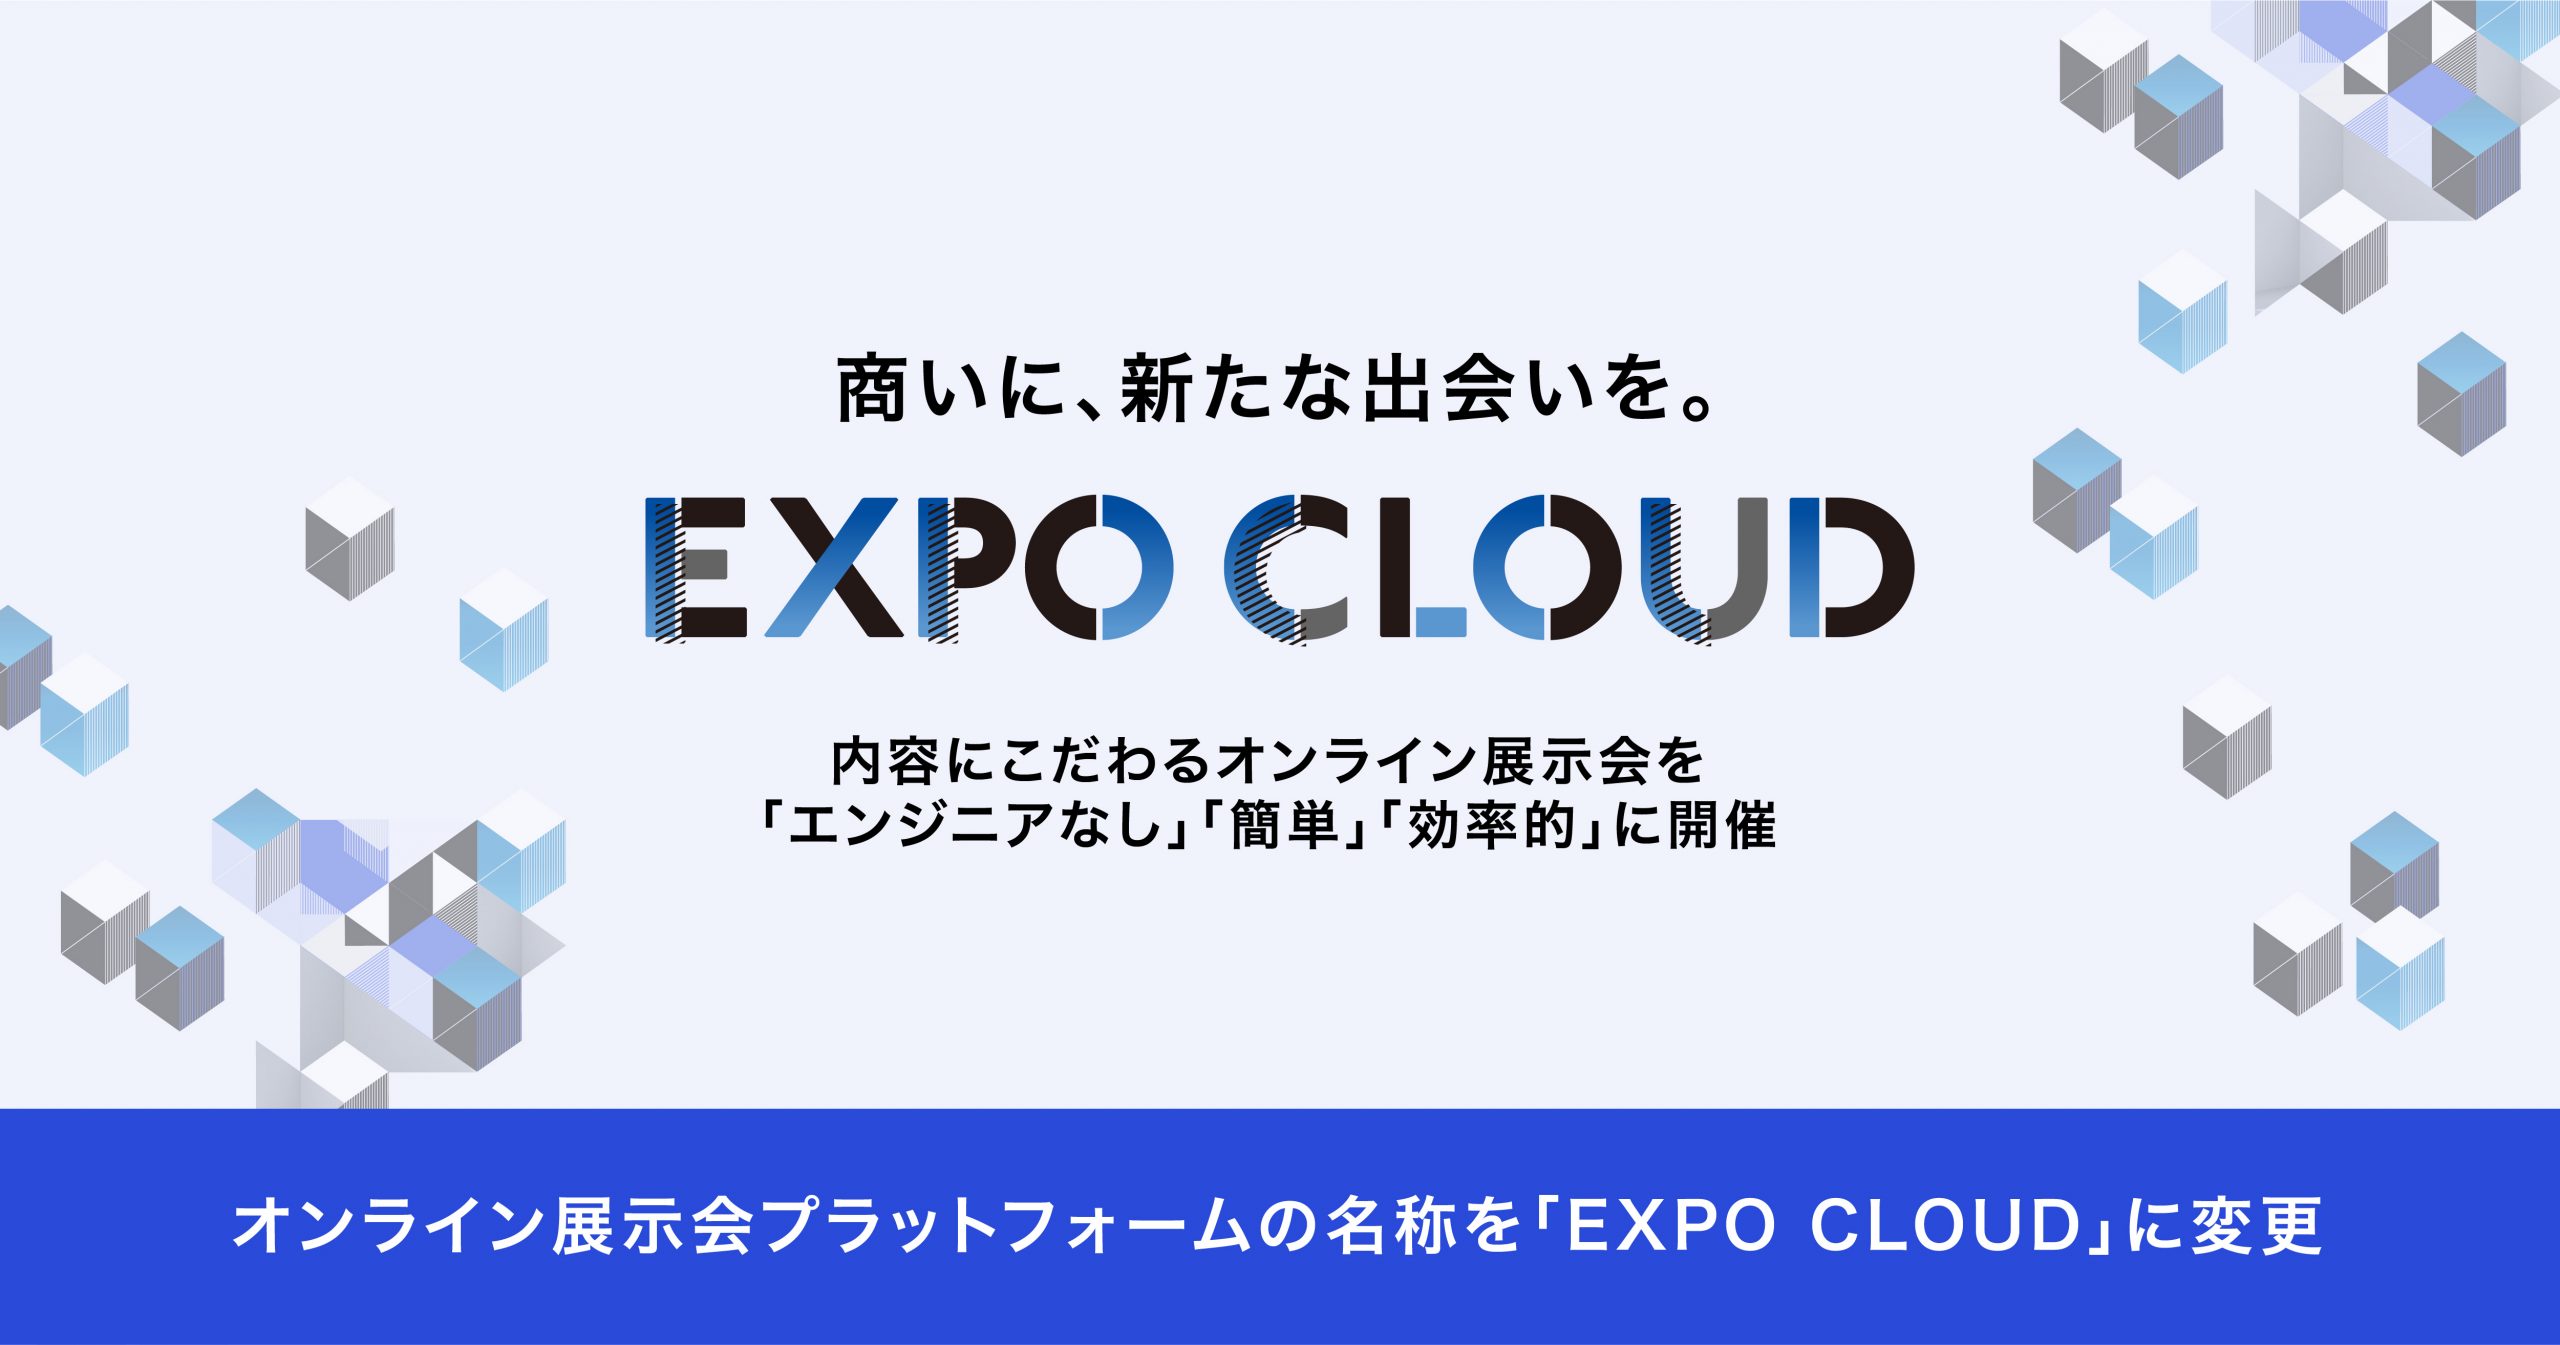 オンライン展示会プラットフォームの名称を「EXPO CLOUD」に変更